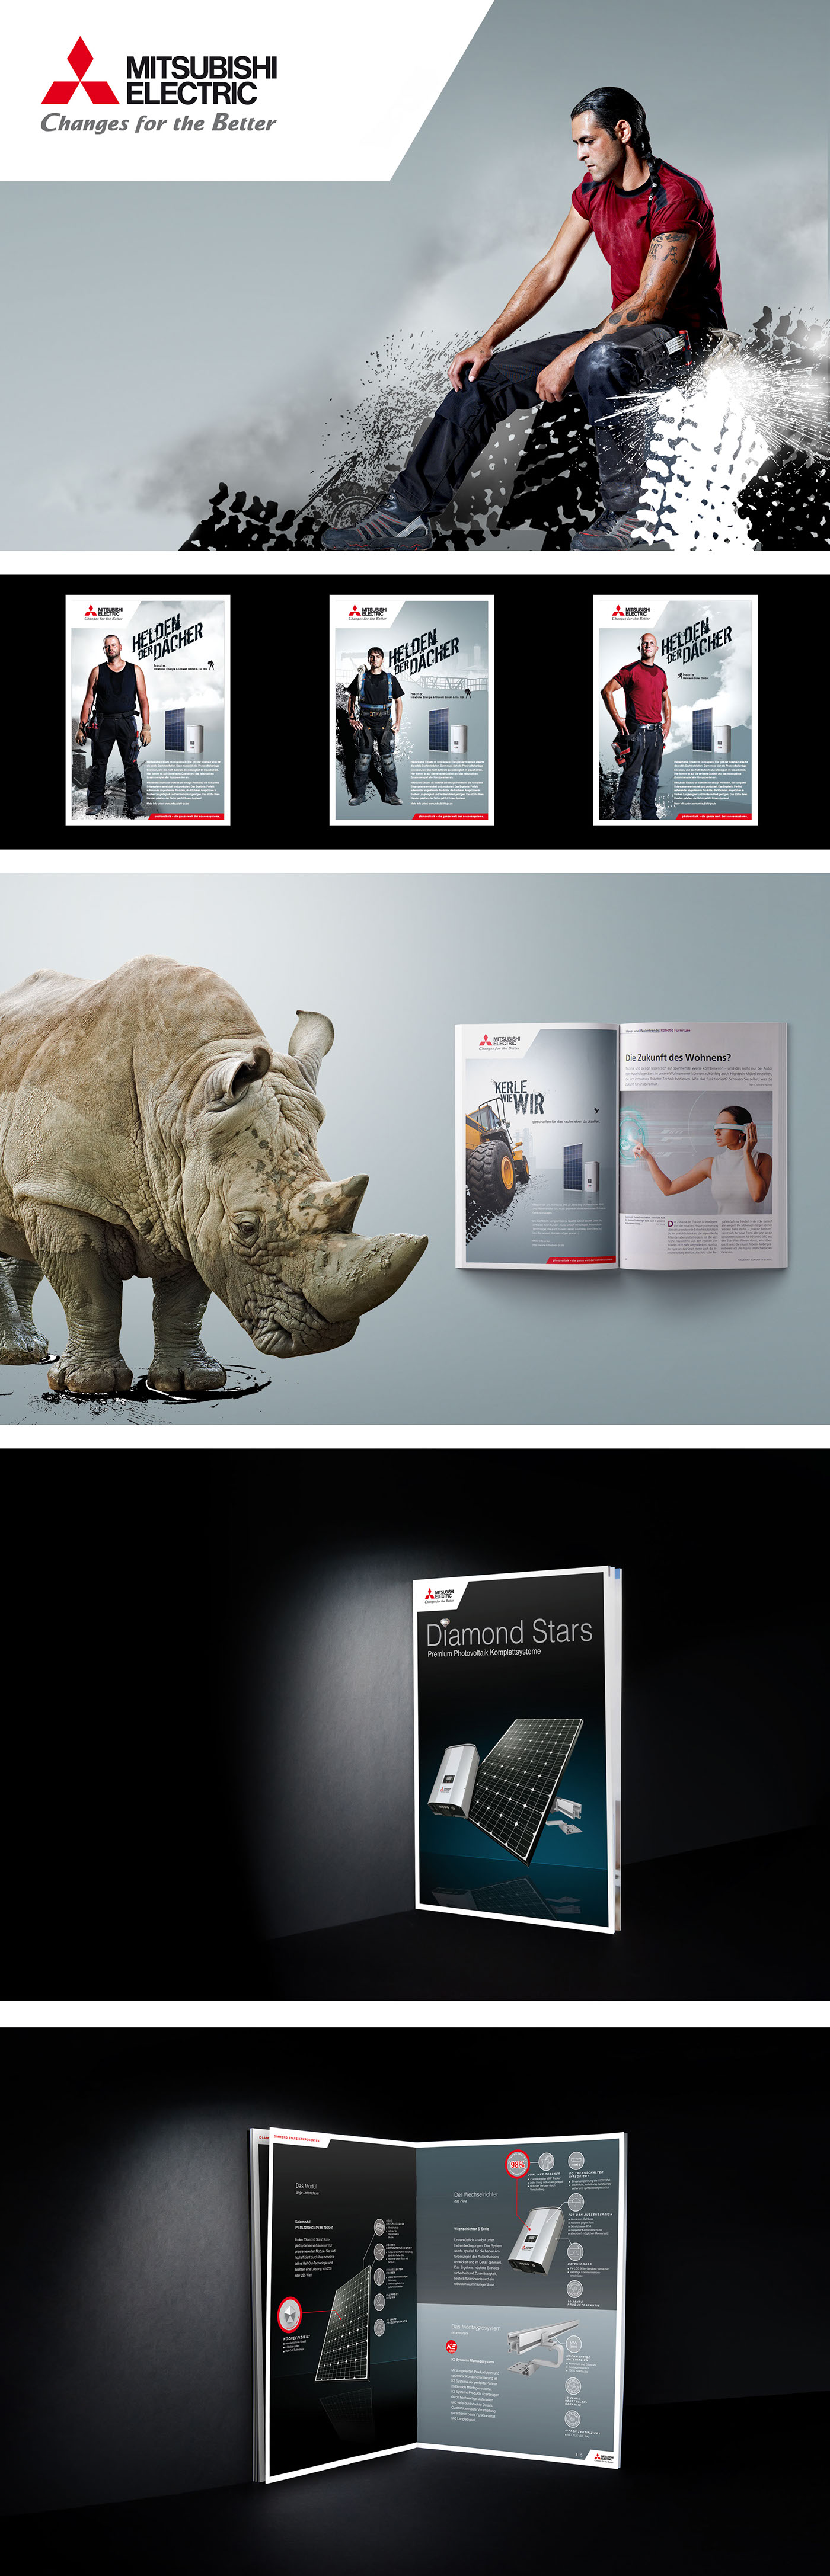 werbung Corporate Design Konzept Visuelle Kommunikation print branding  Produktinszenierung magazin Anzeigen design